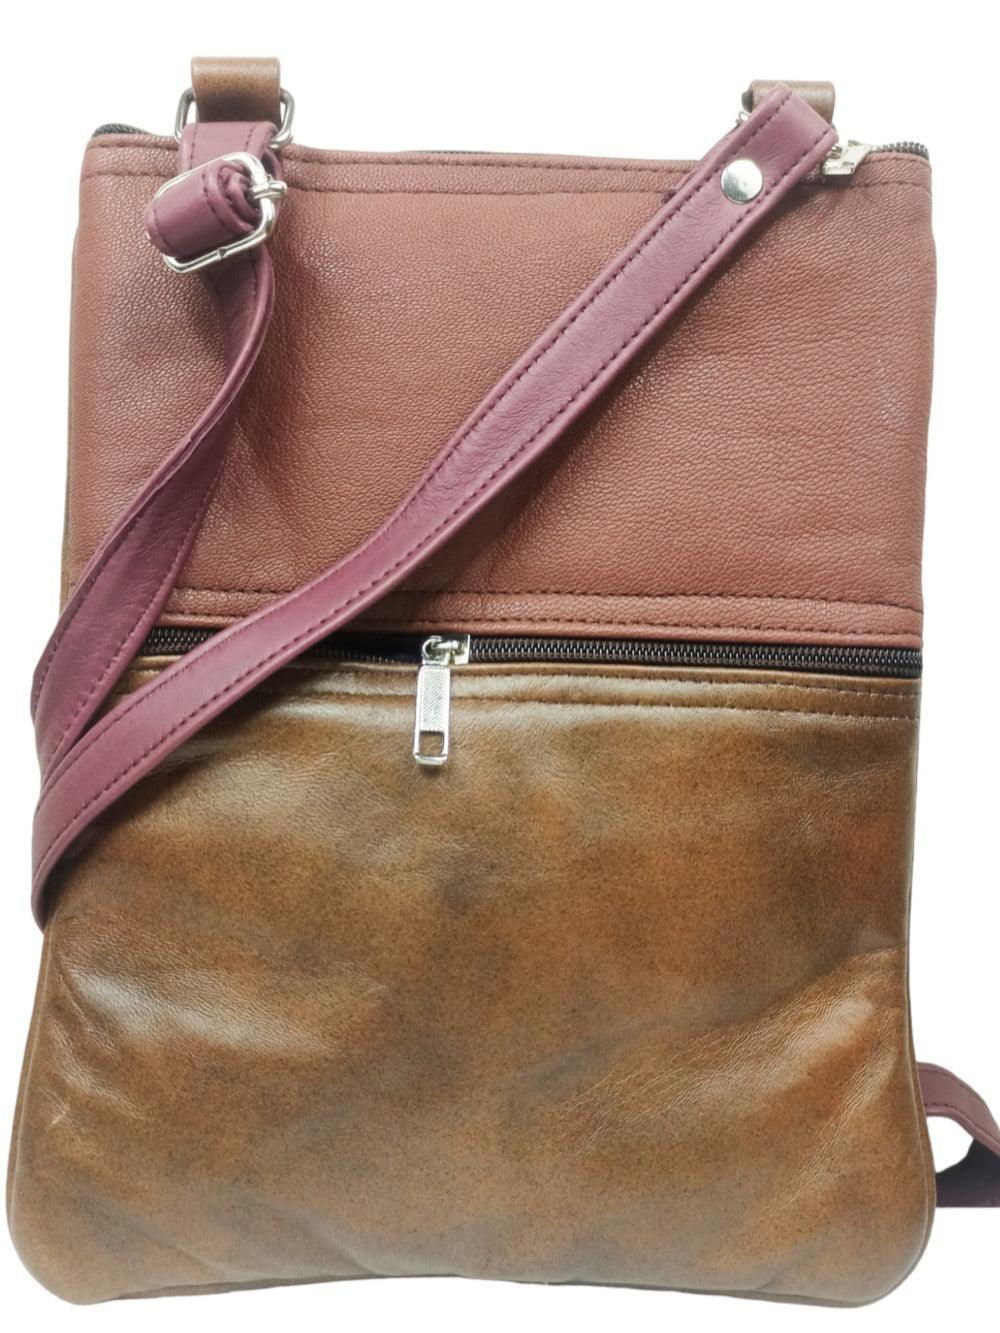 Kashmiri Embroided Sling Bag | Plain 5 Zipper | Sling Bag For Girls